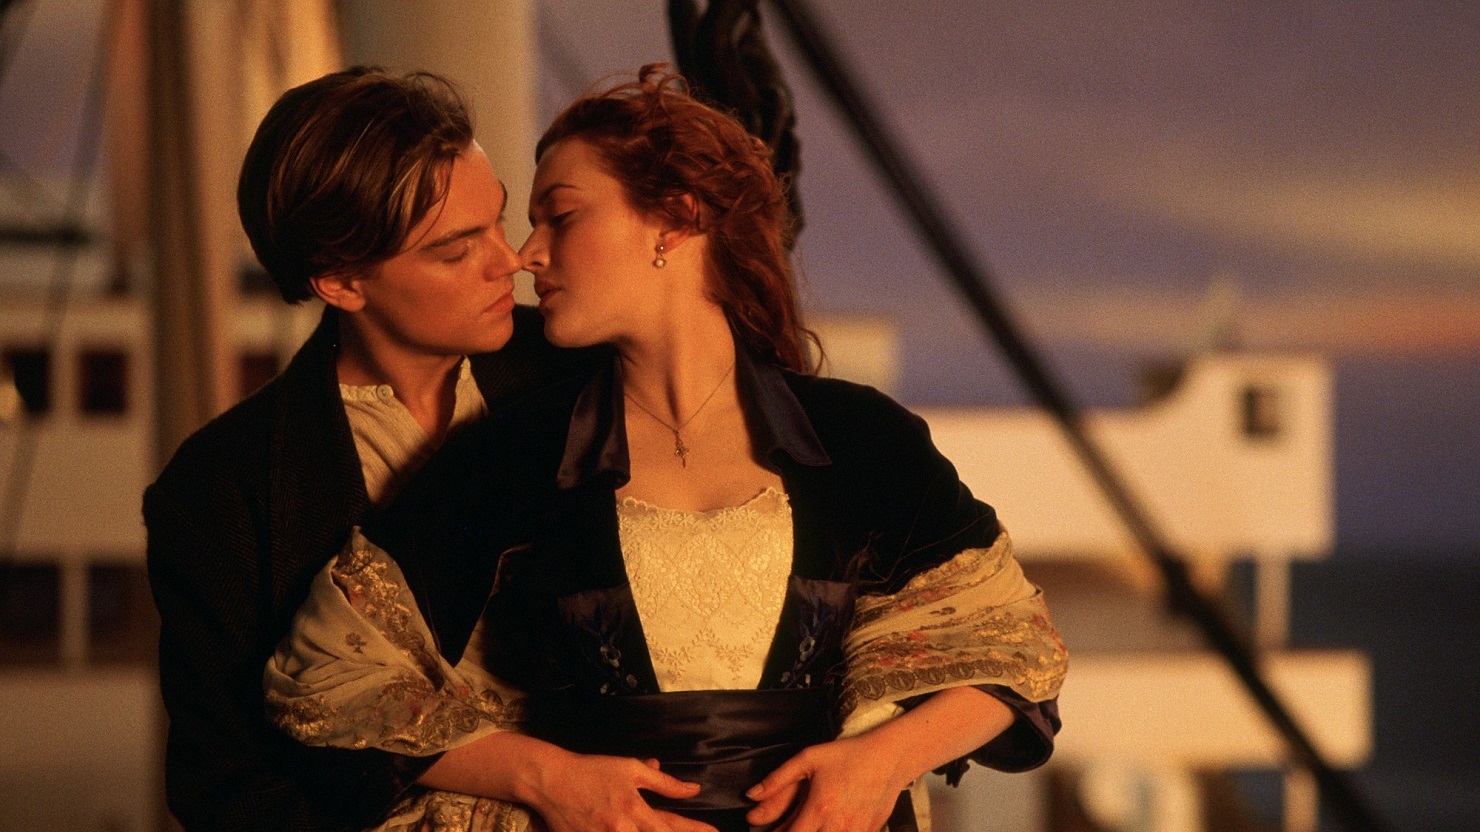 Леонардо Дикаприо едва не лишился роли в "Титанике" из-за отказа проходить прослушивание